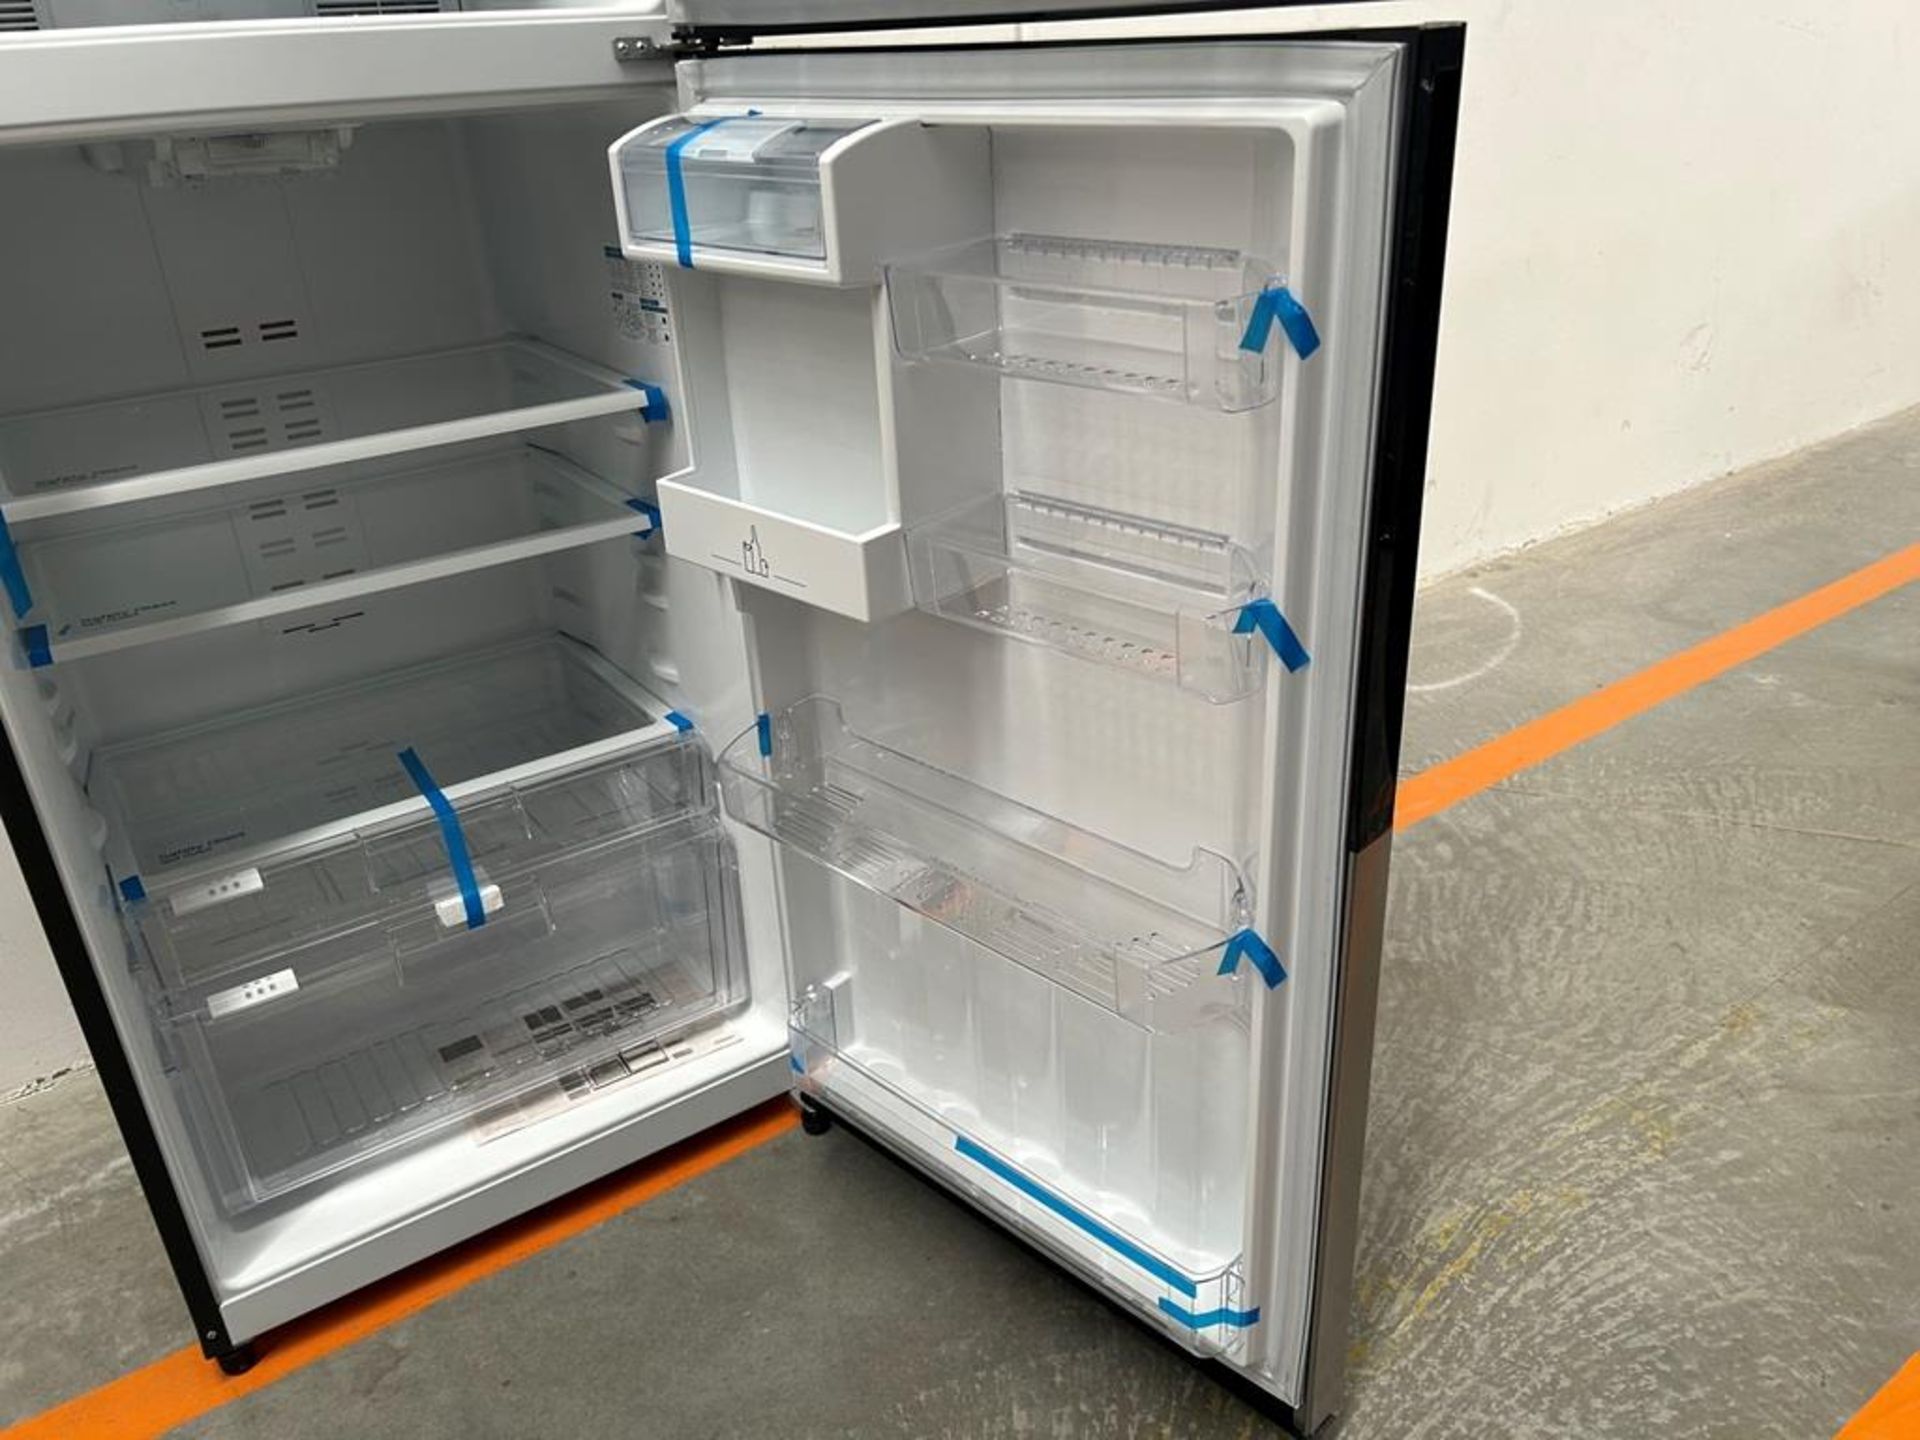 (NUEVO) Refrigerador con dispensador de agua Marca MABE, Modelo RMS510IBMRXA, Serie 04327, Color GR - Image 7 of 11